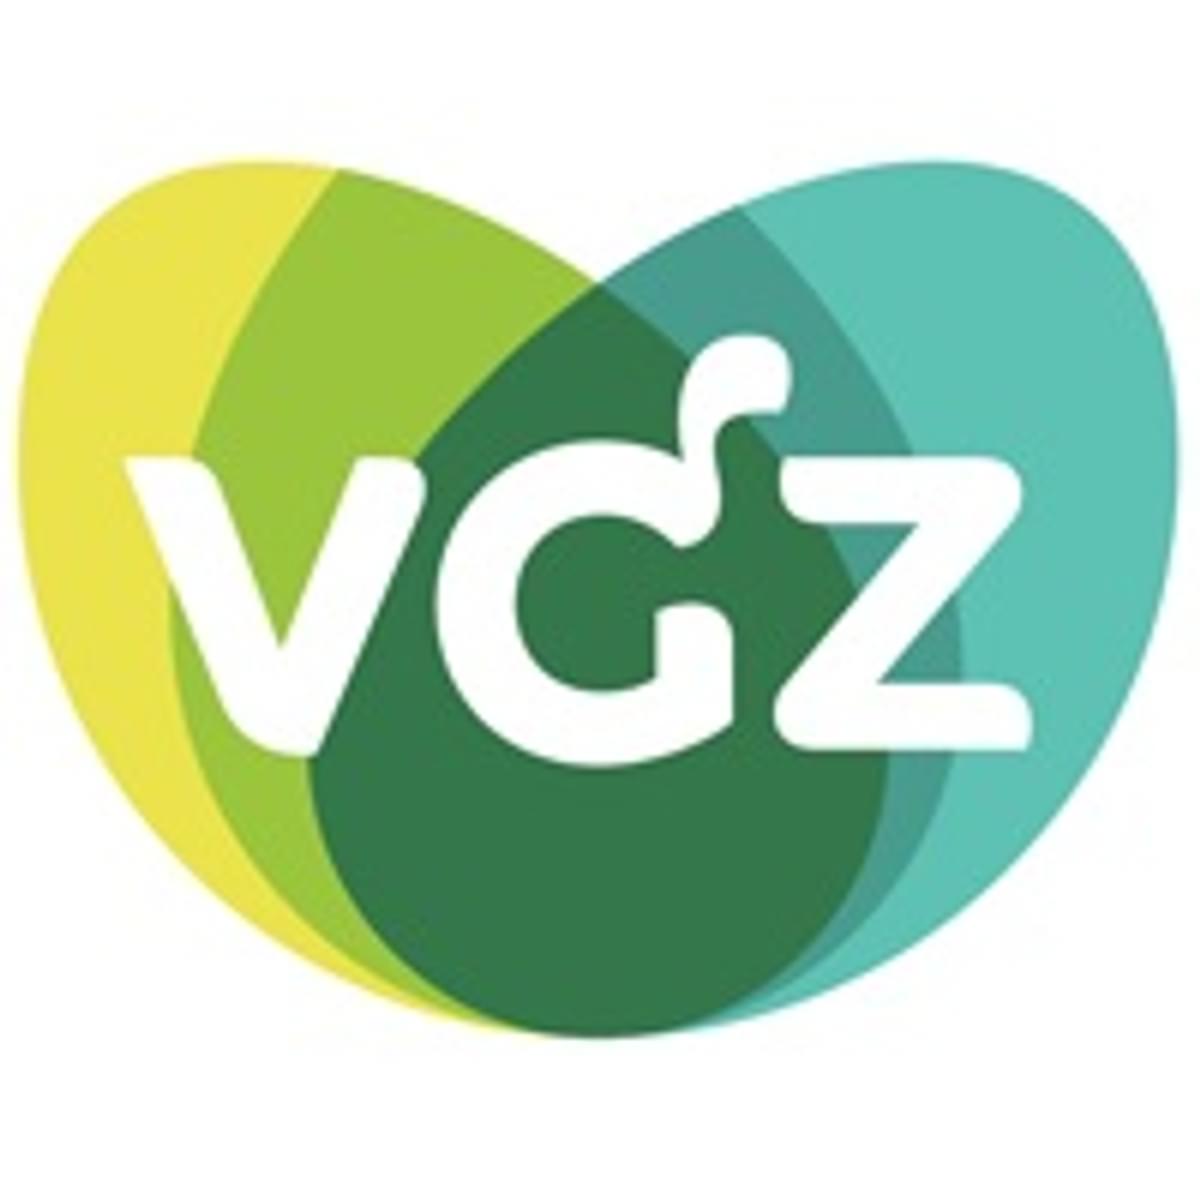 Coöperatie VGZ lanceert service store vol gezondheidsdiensten image